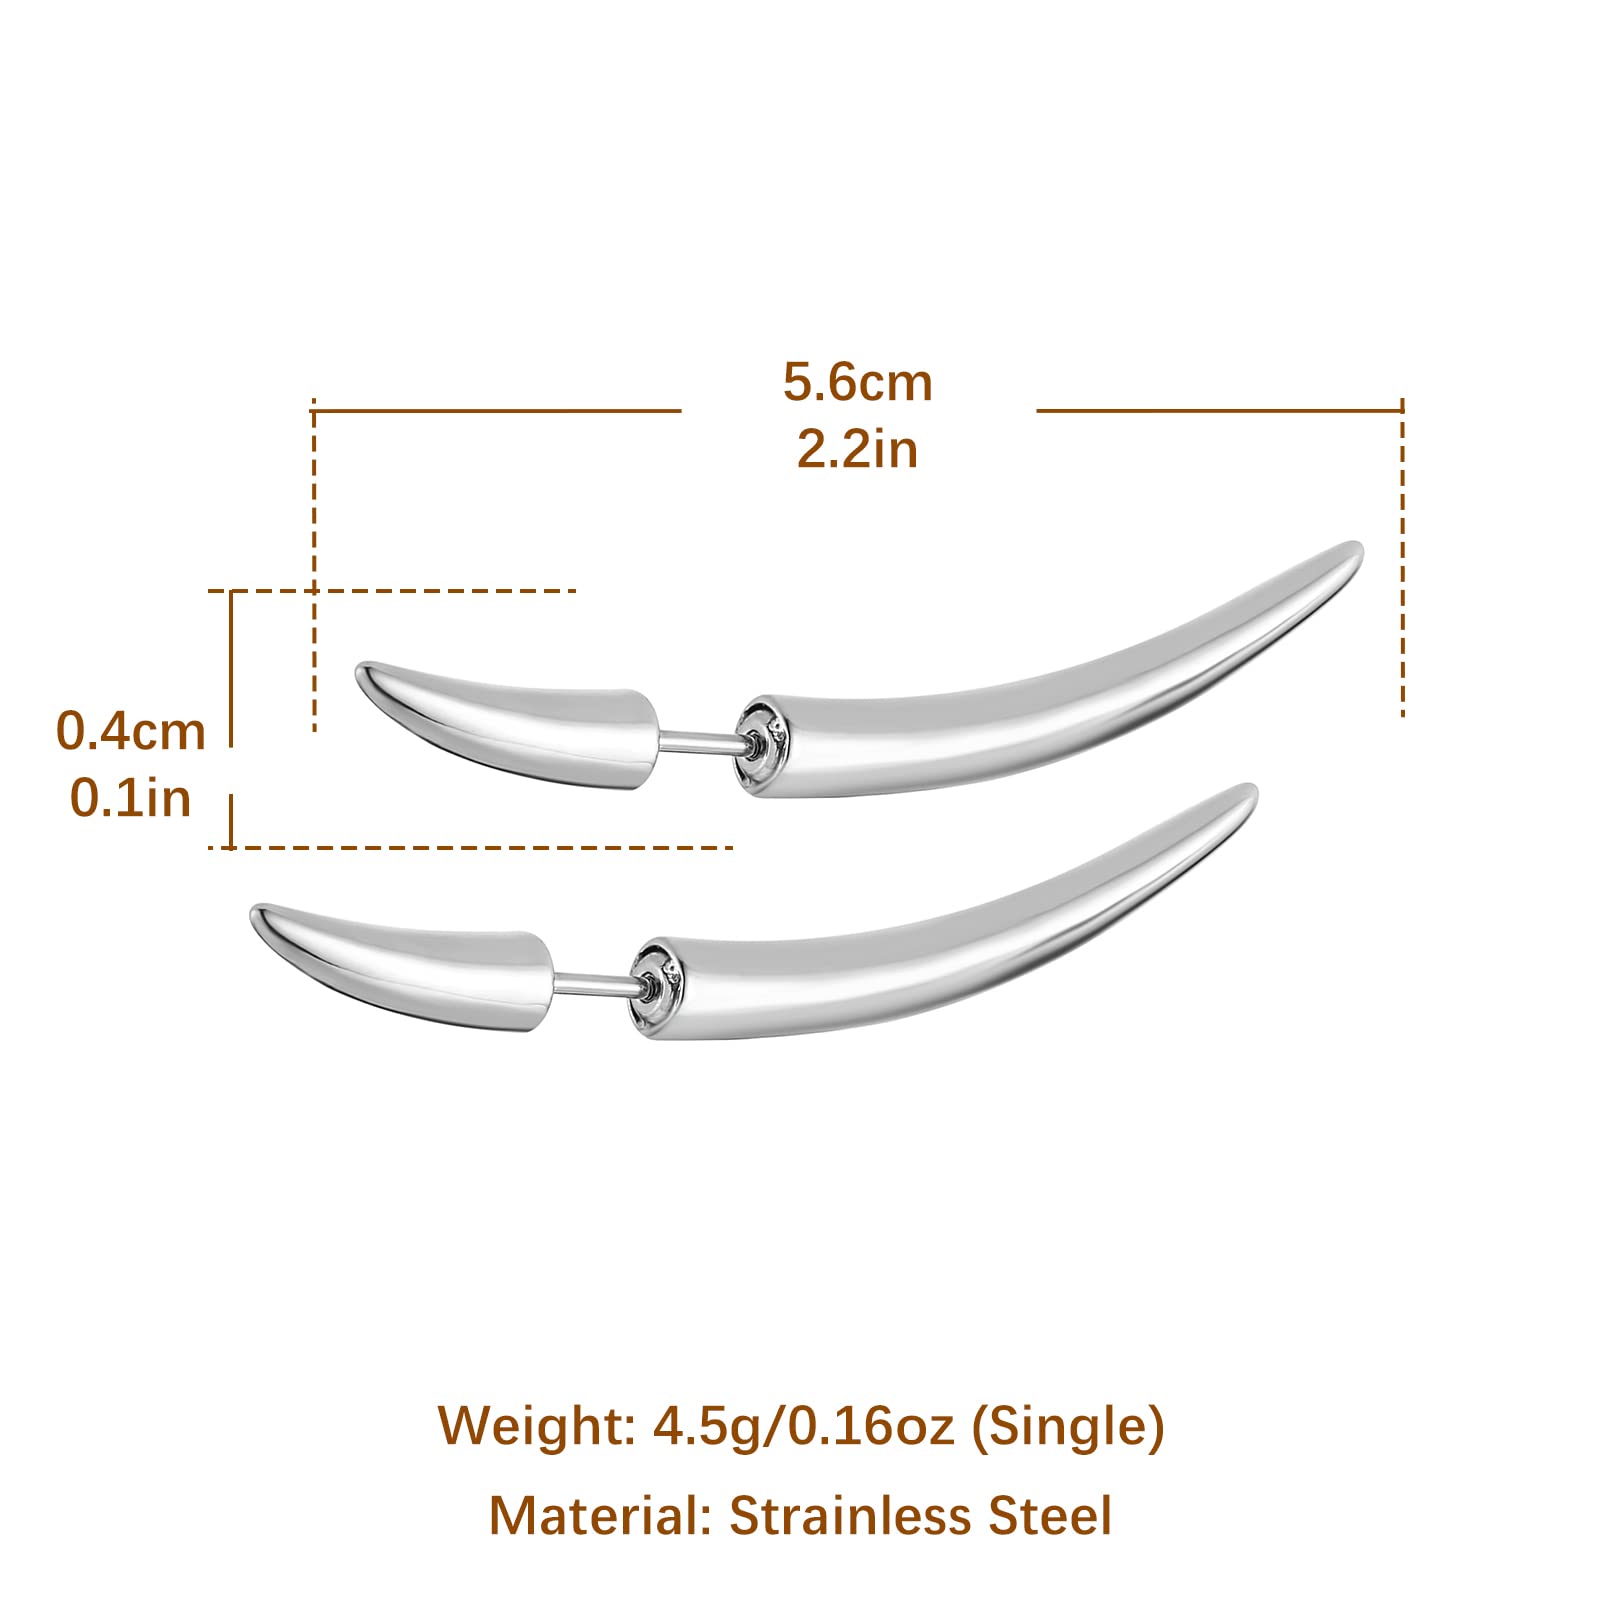 HZMAN Stainless Steel Spike Taper Stud Earrings for Men Women Screw Piercing Sharp Taper Earring Jewelry Gift